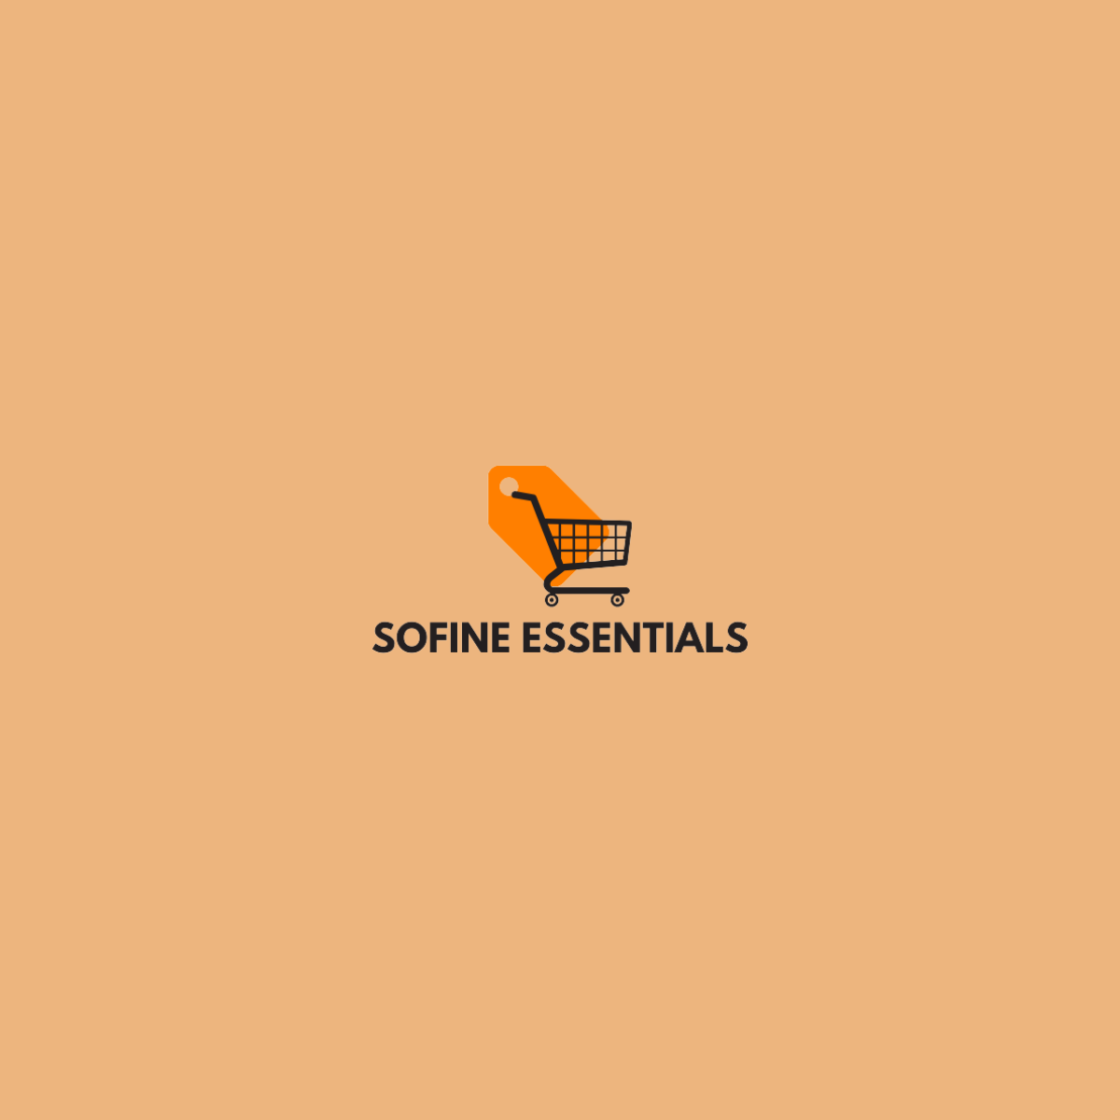 Sofine Essentials